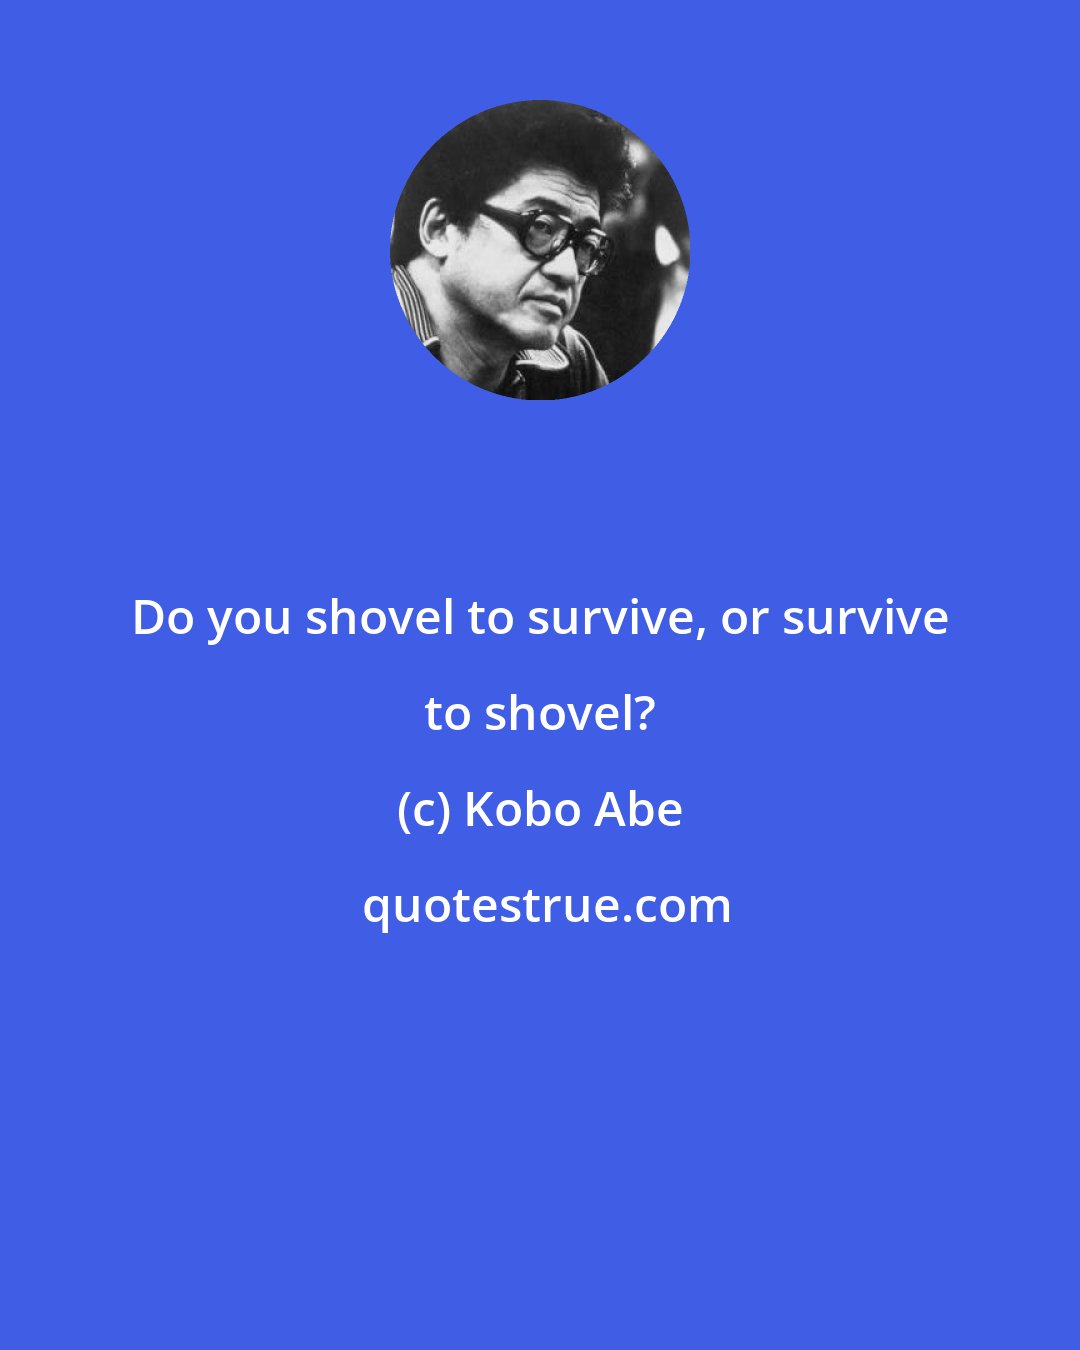 Kobo Abe: Do you shovel to survive, or survive to shovel?